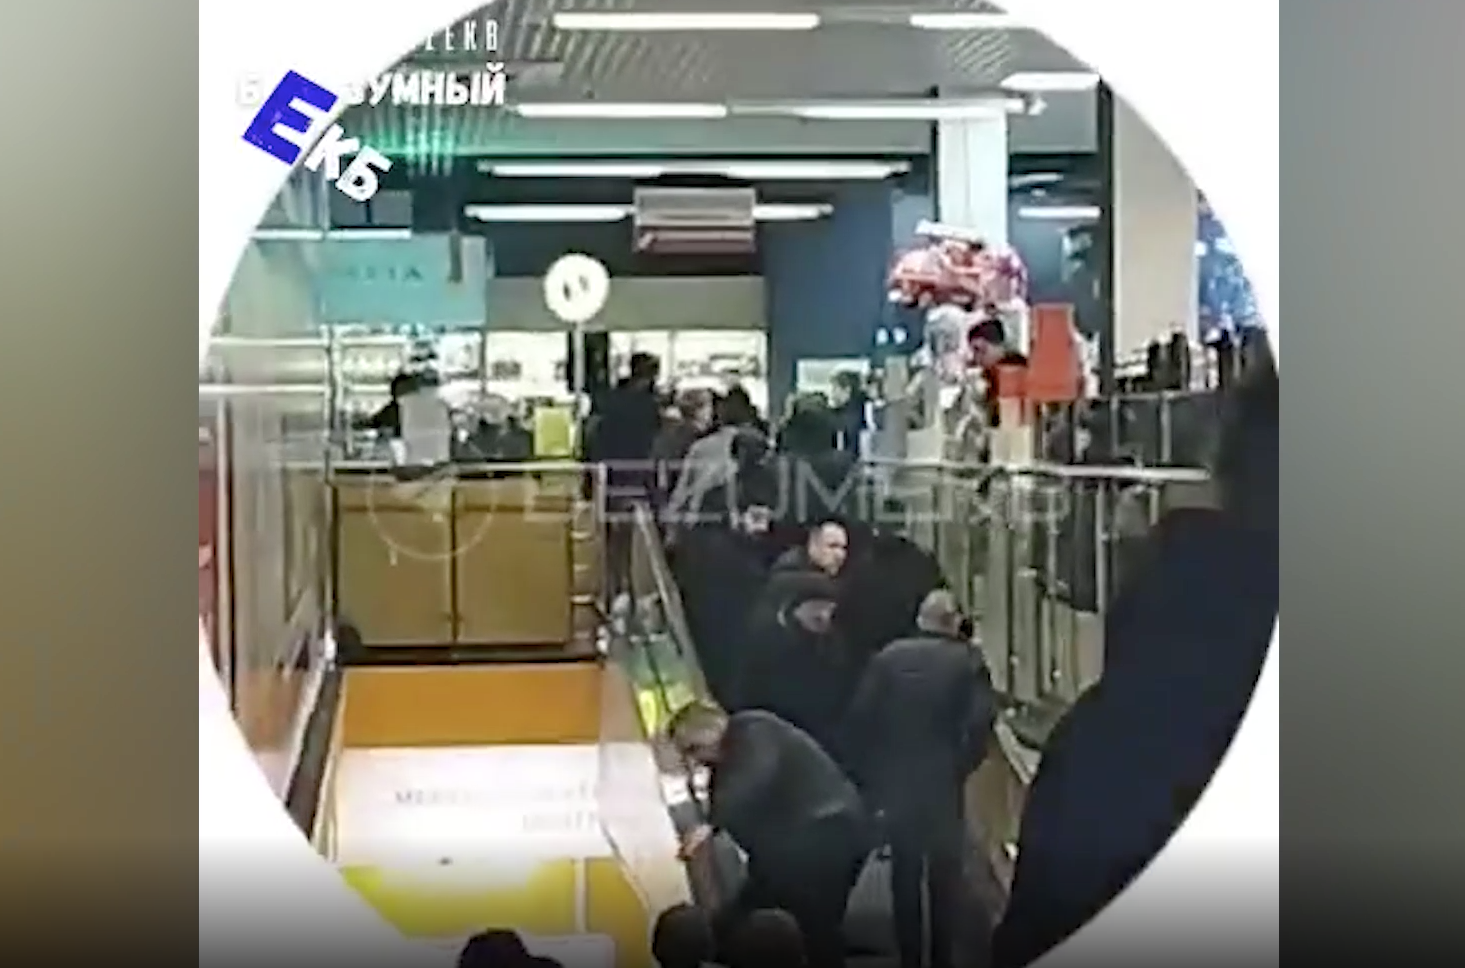 "Скорую, быстро!": Появилось жуткое видео с подростком, которому зажало голову на эскалаторе в ТЦ